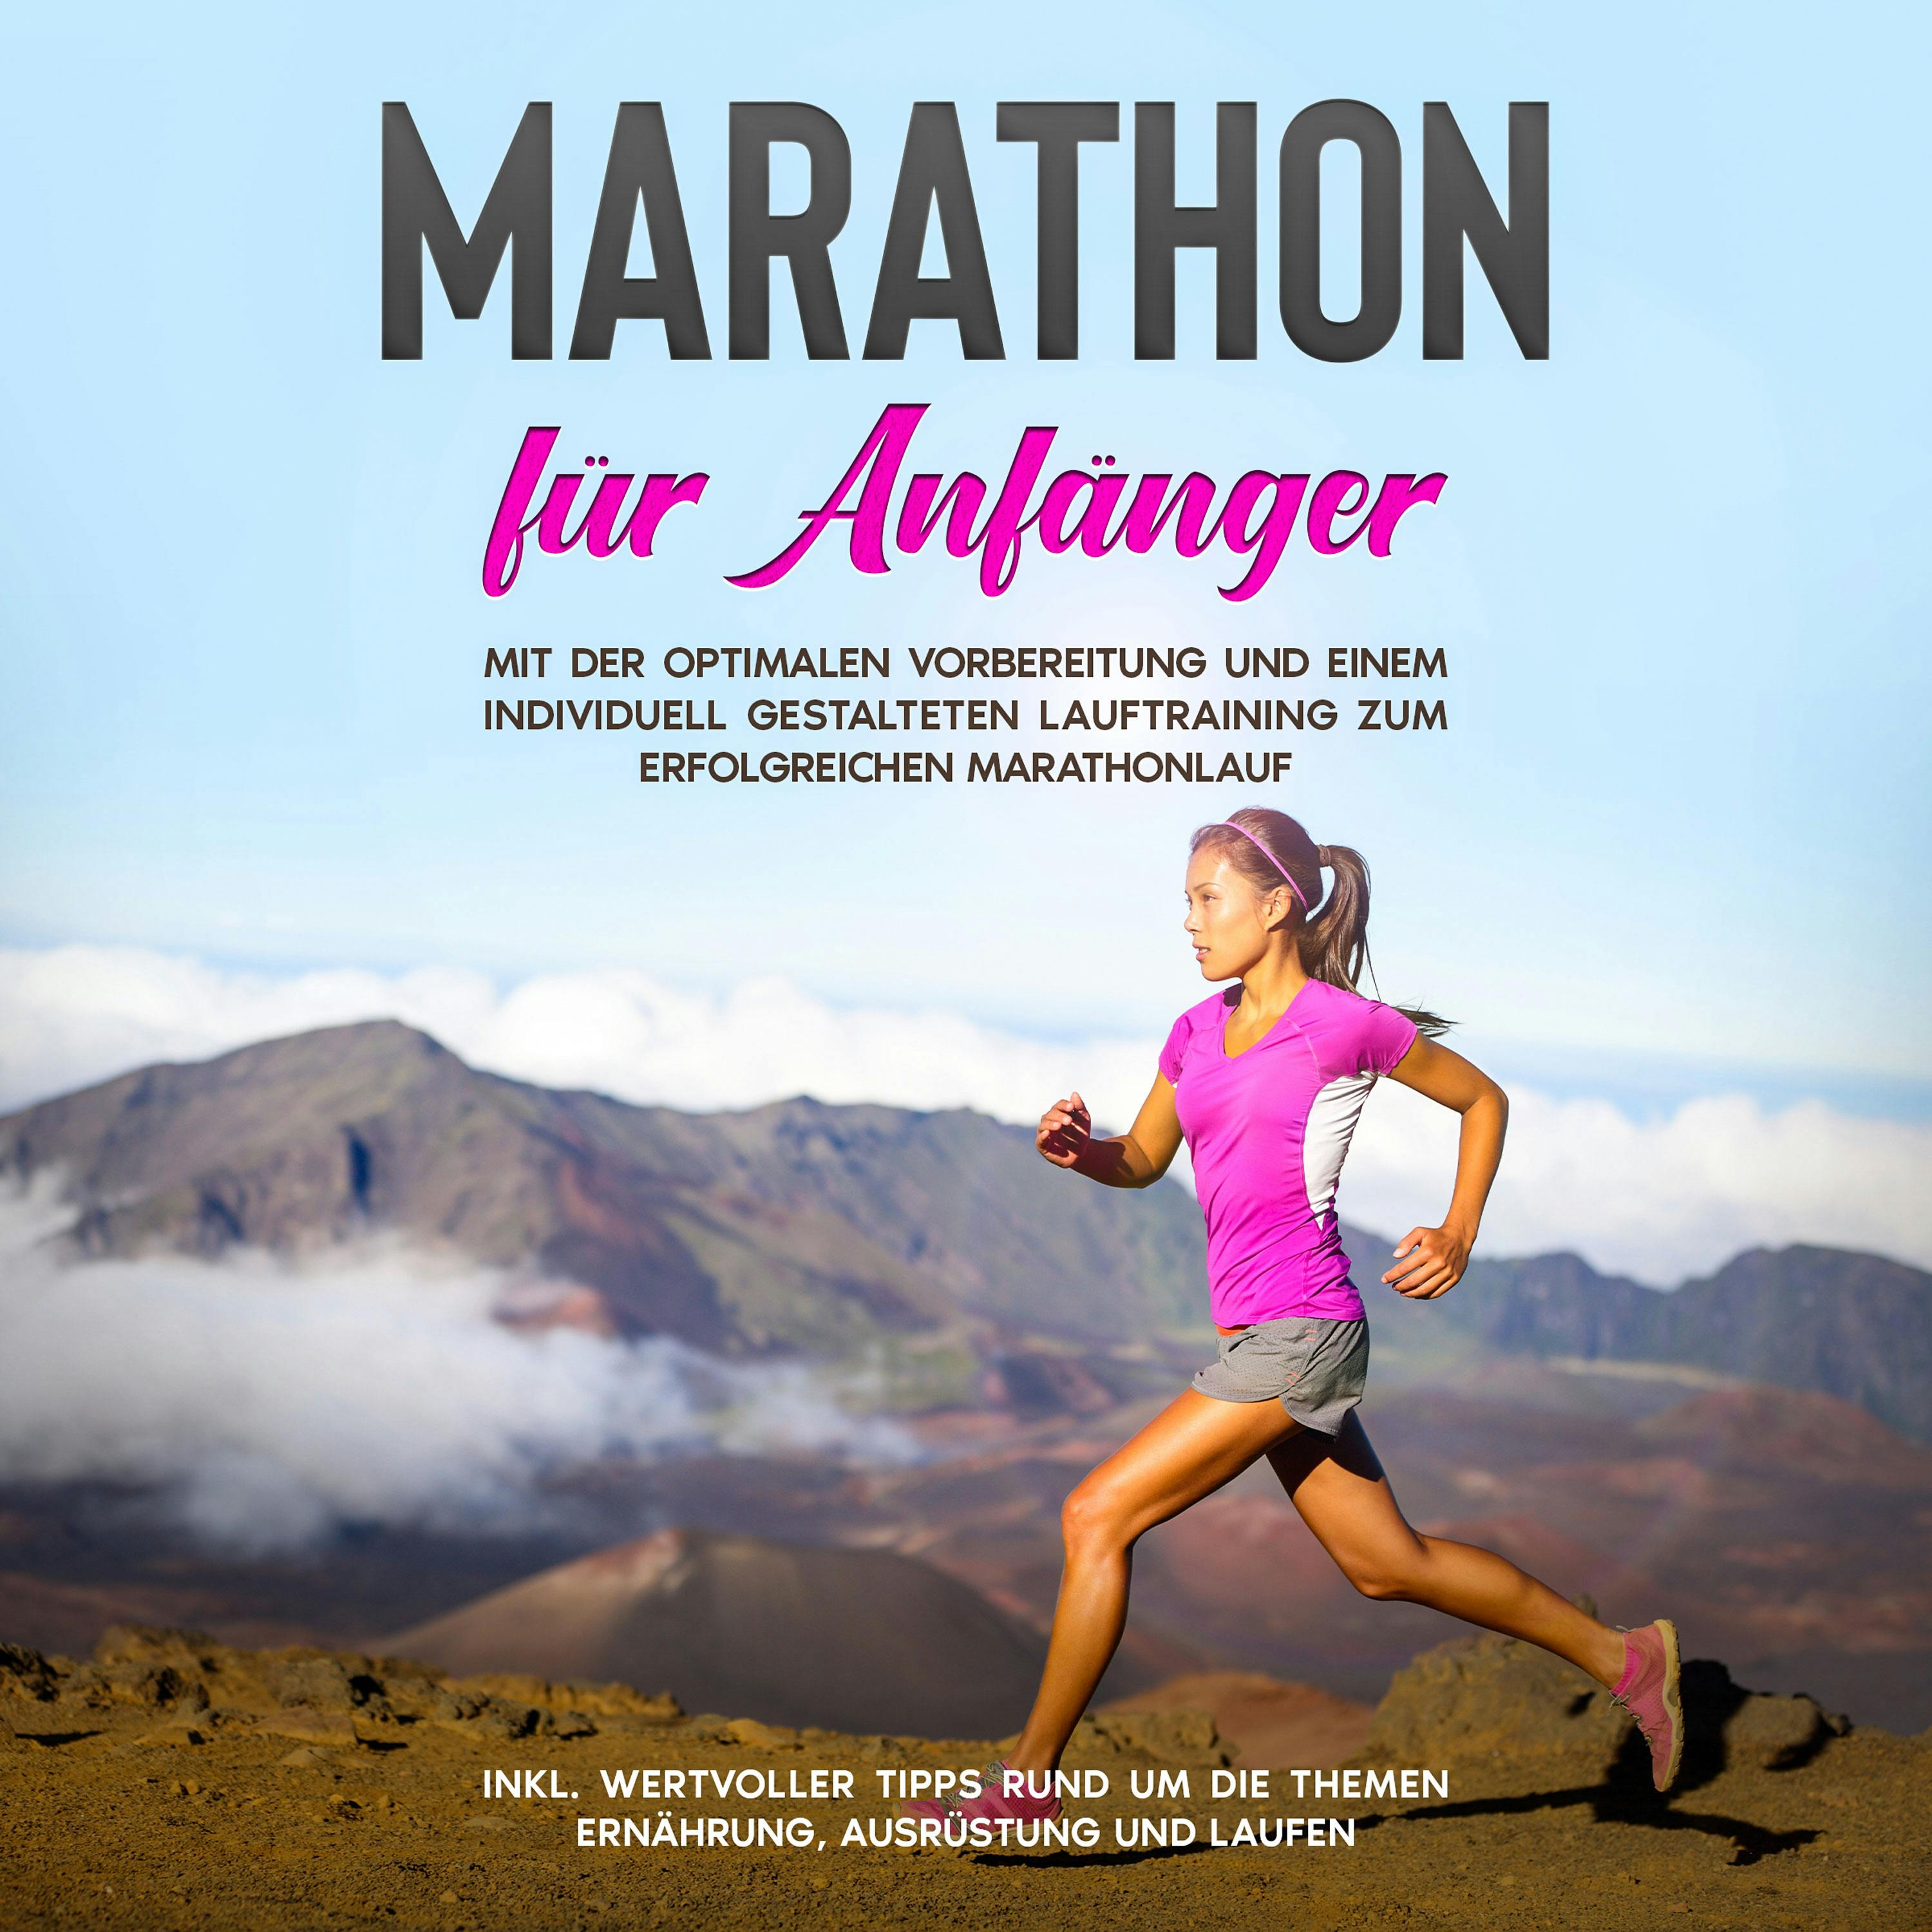 Marathon für Anfänger: Mit der optimalen Vorbereitung und einem individuell gestalteten Lauftraining zum erfolgreichen Marathonlauf - inkl. wertvoller Tipps rund um die Themen Ernährung, Ausrüstung und Laufen - undefined